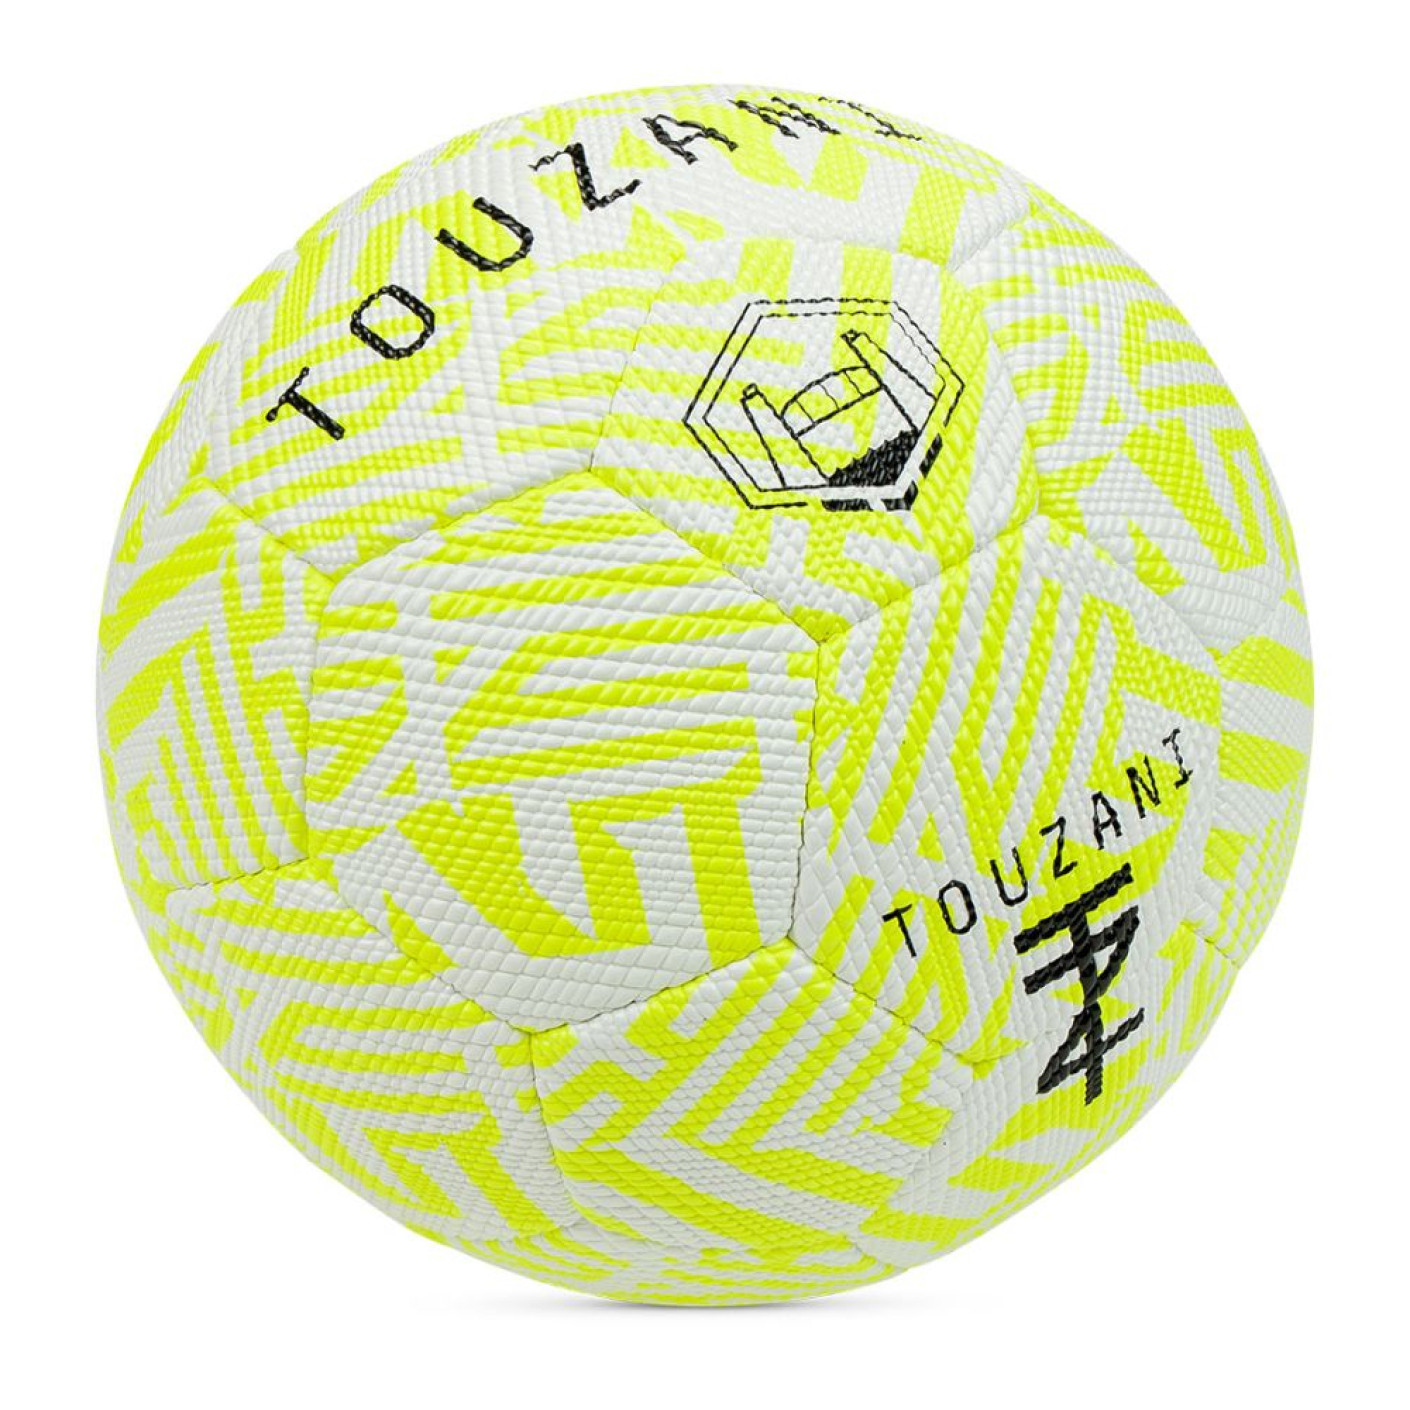 TOUZANI TZ Voetbal Official White Yellow